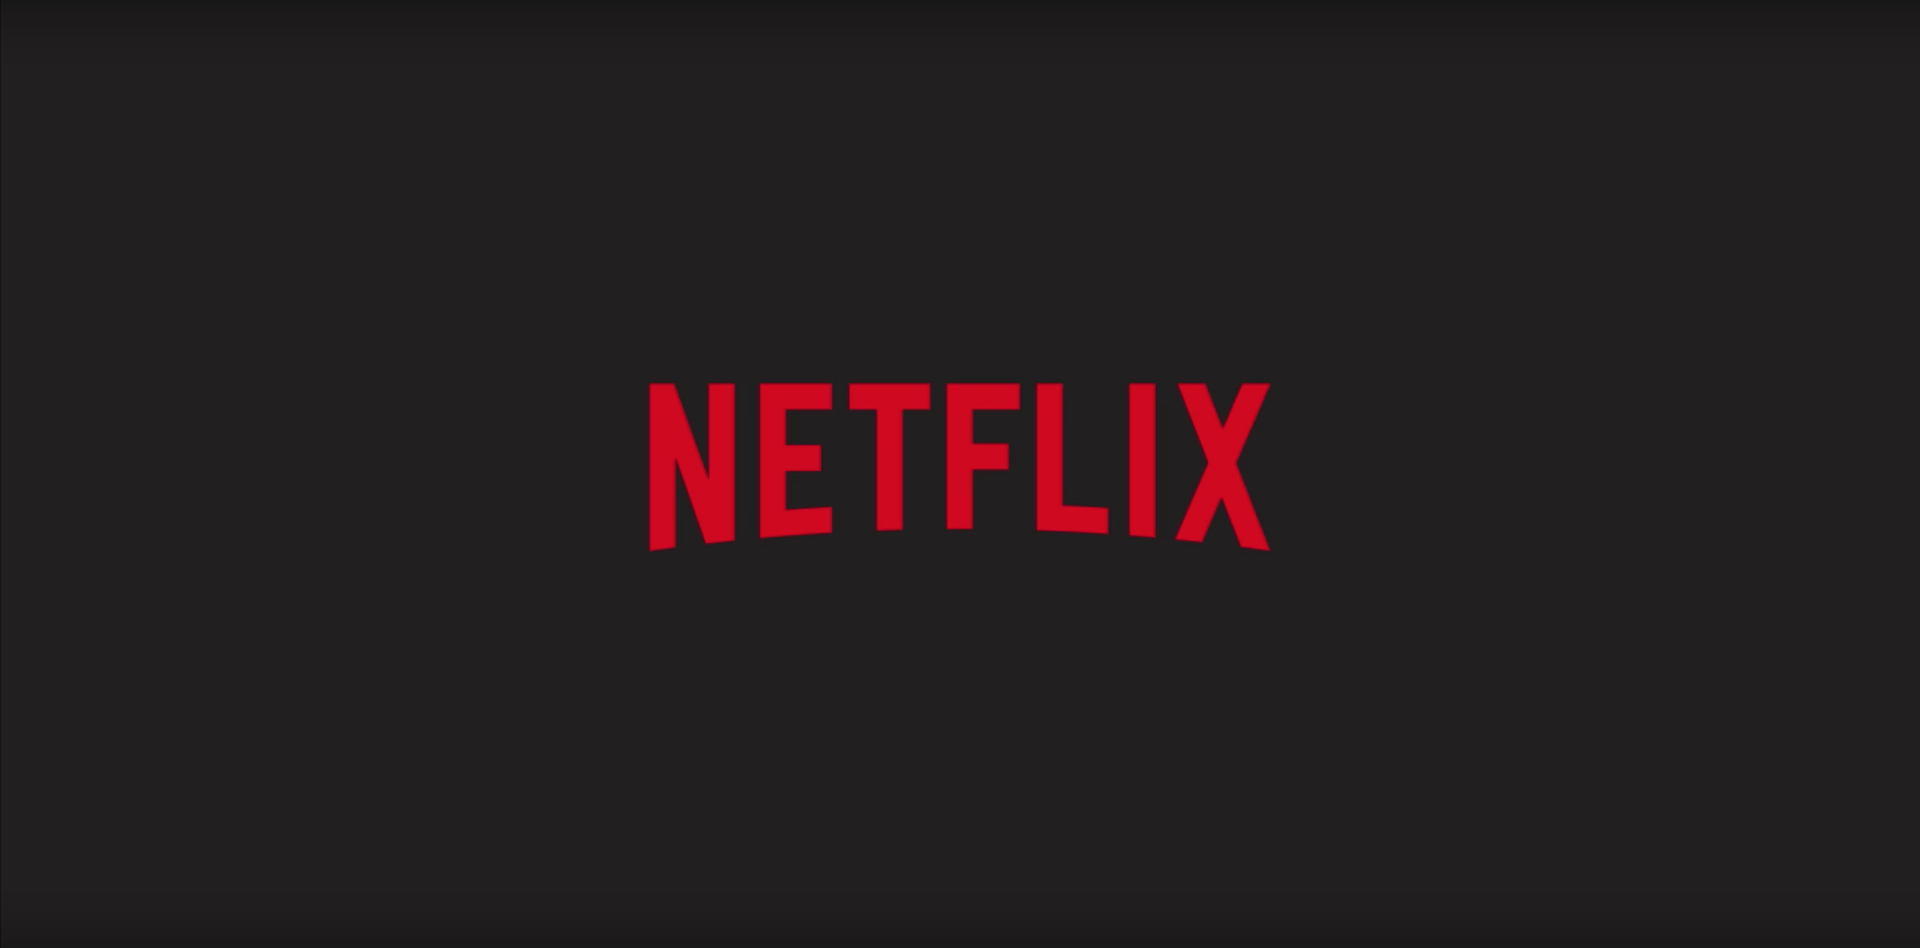 Netflix começa a divulgar números da audiência de suas séries e filmes